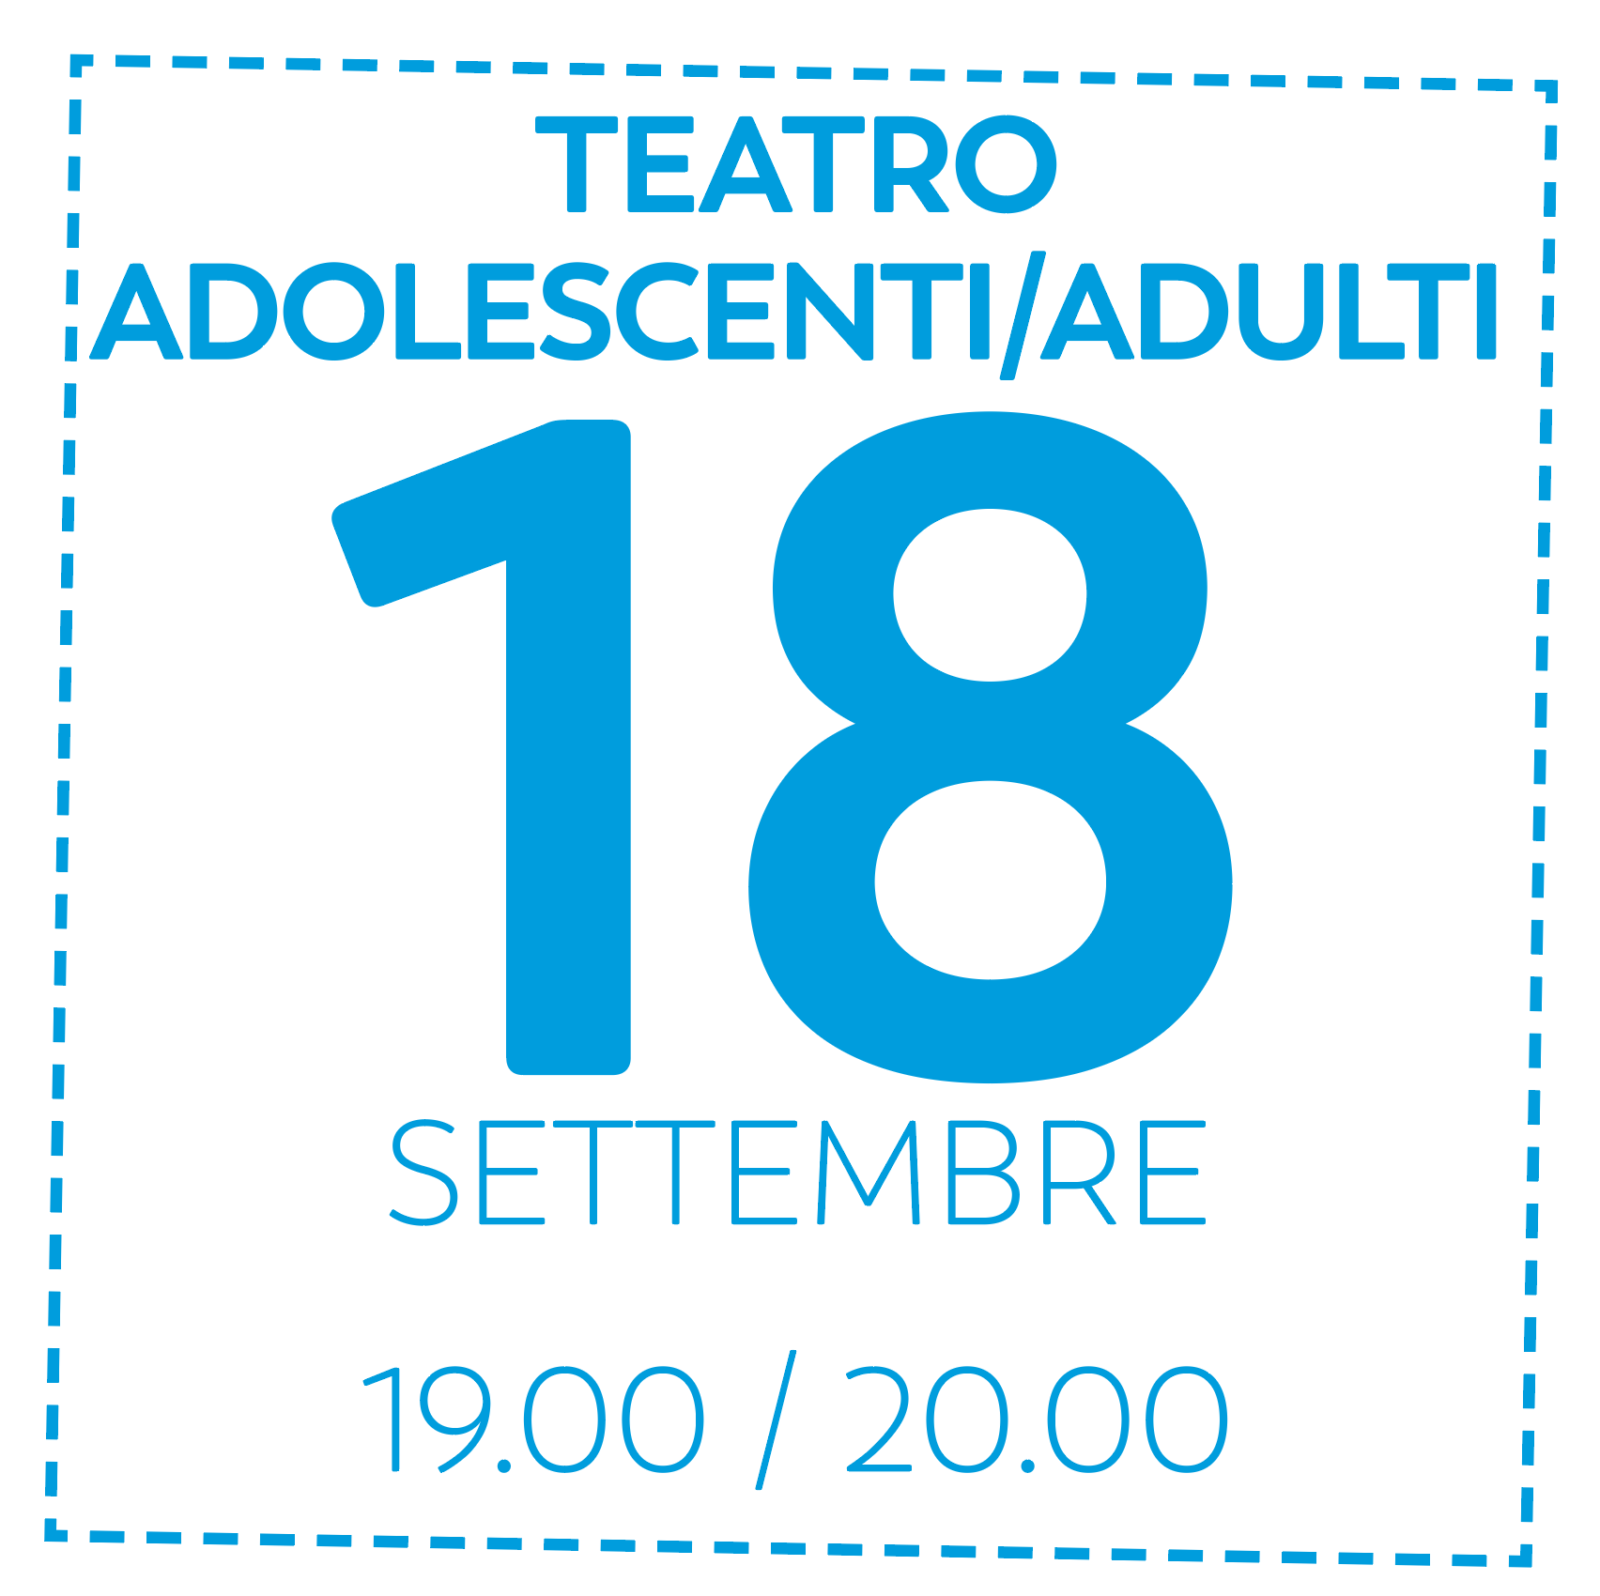 OD TEATRO ADOLESCENTI / ADULTI - 18/9